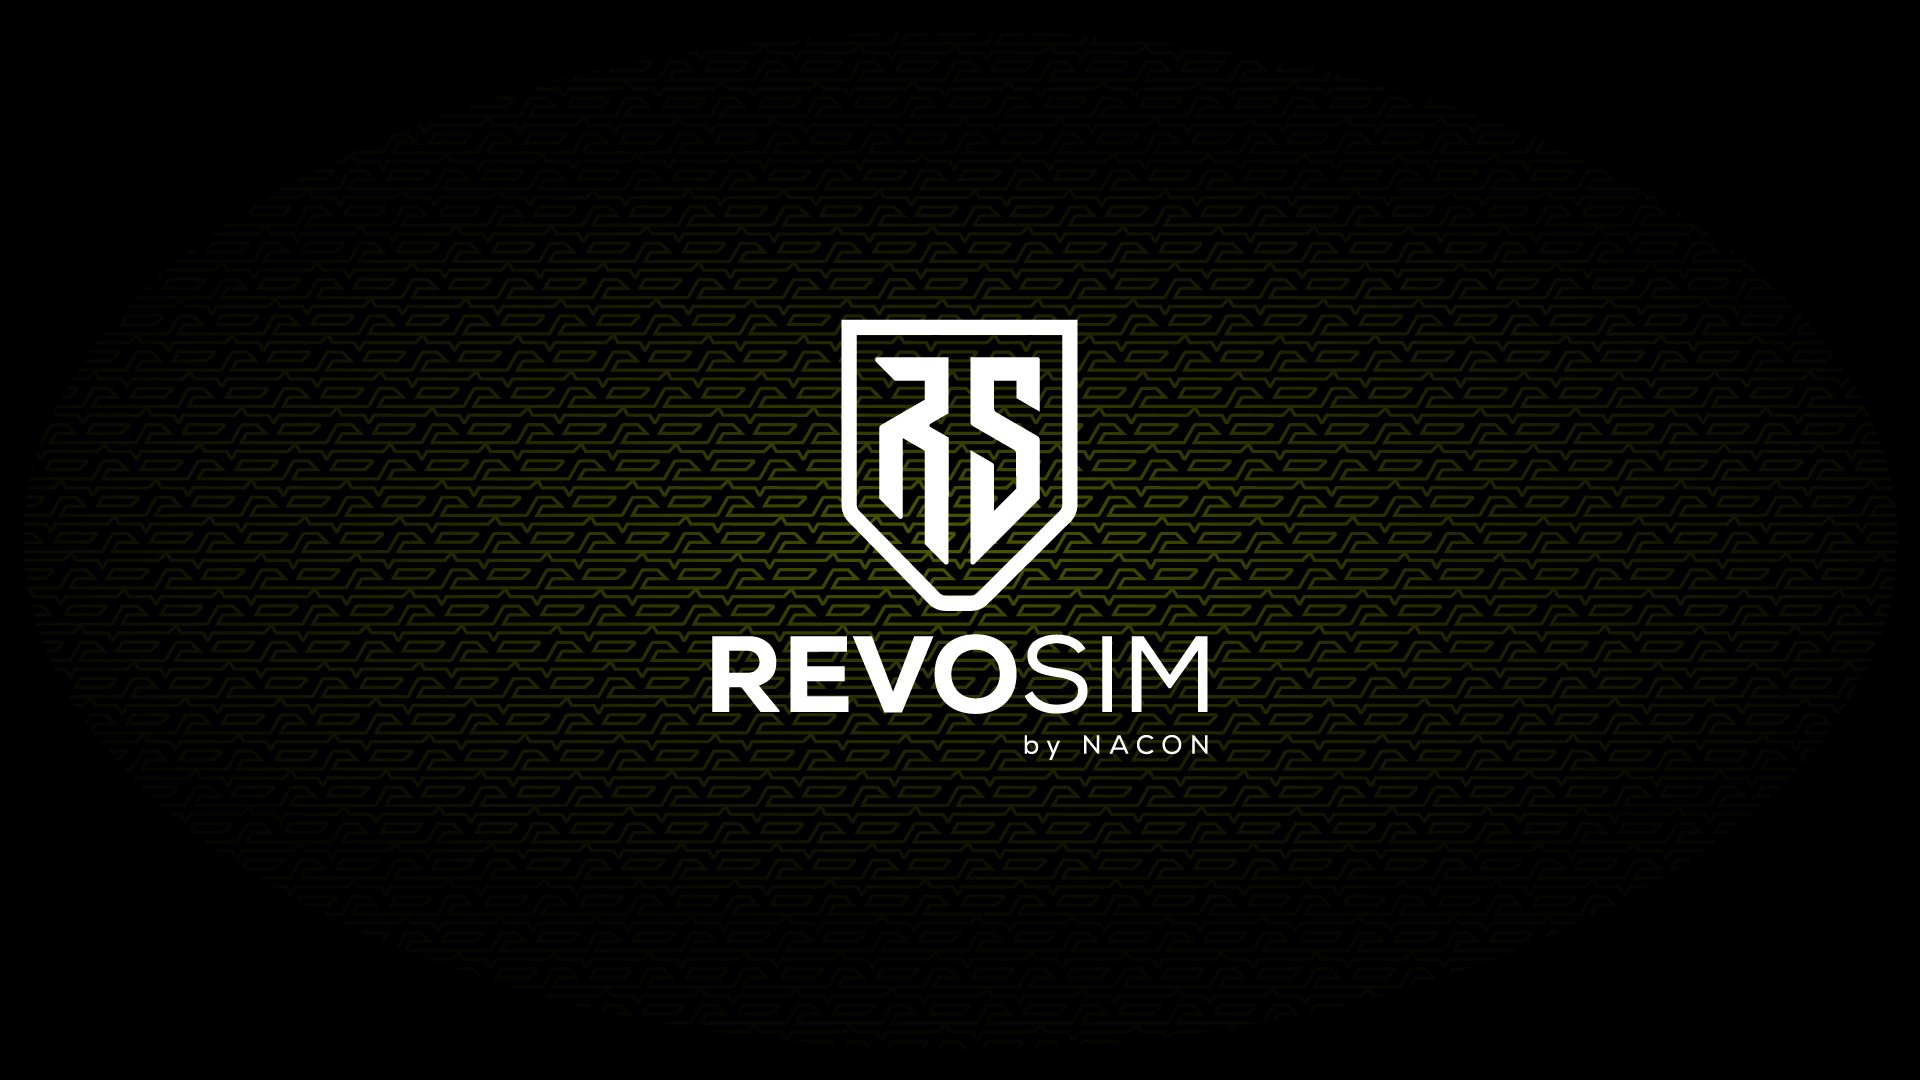 More information about "Nacon entra nel settore direct drive con il brand Revosim"